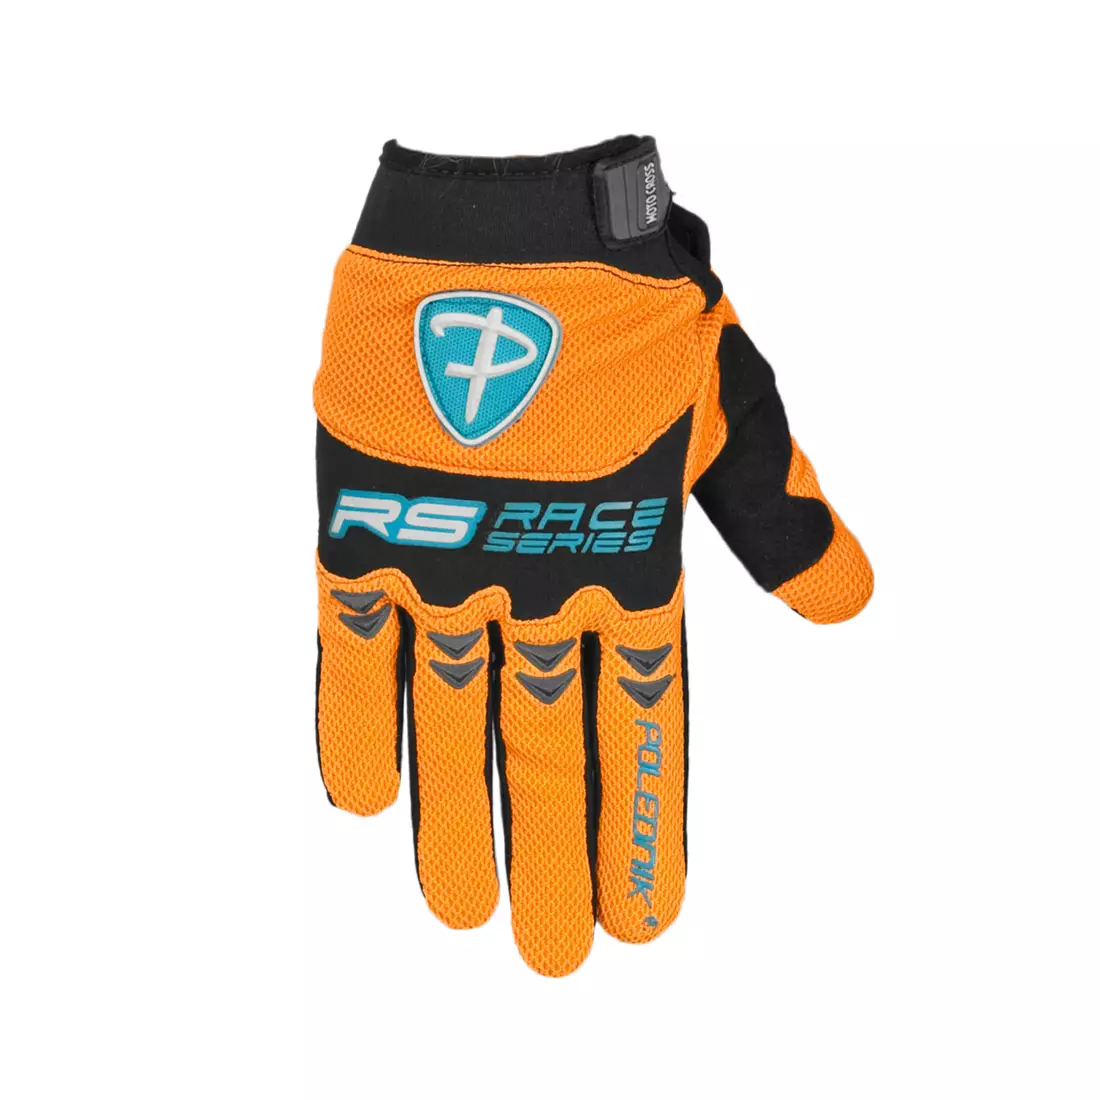 POLEDNIK MX-Handschuhe, Farbe: Orange